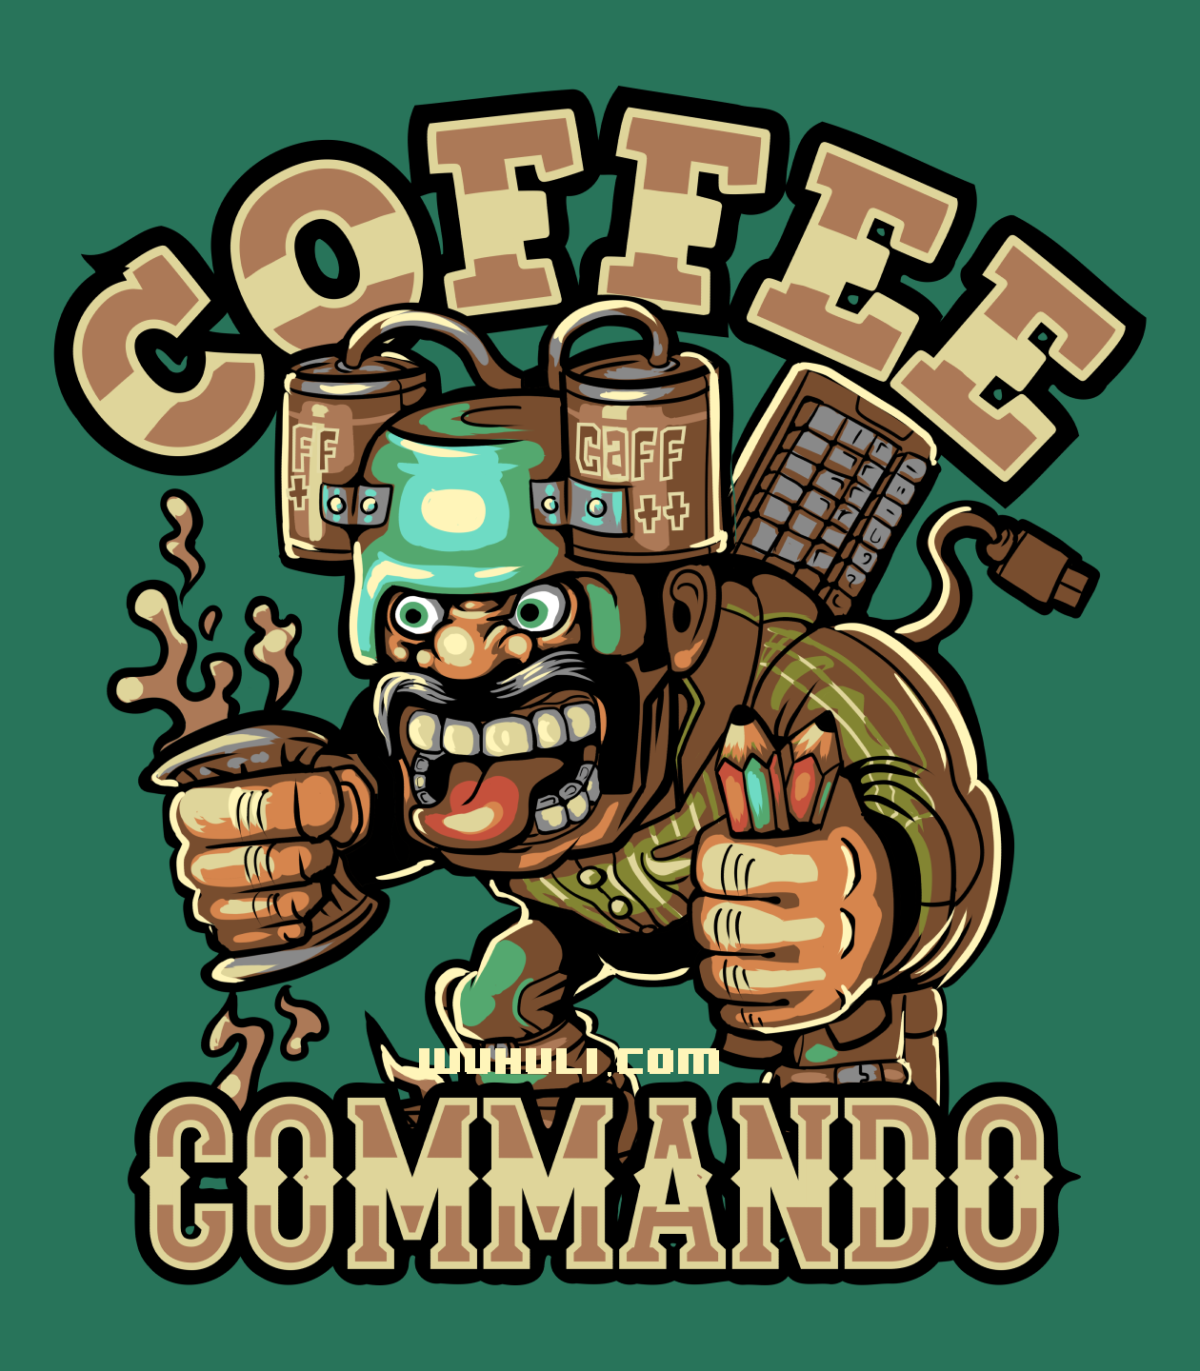 Coffee Commando